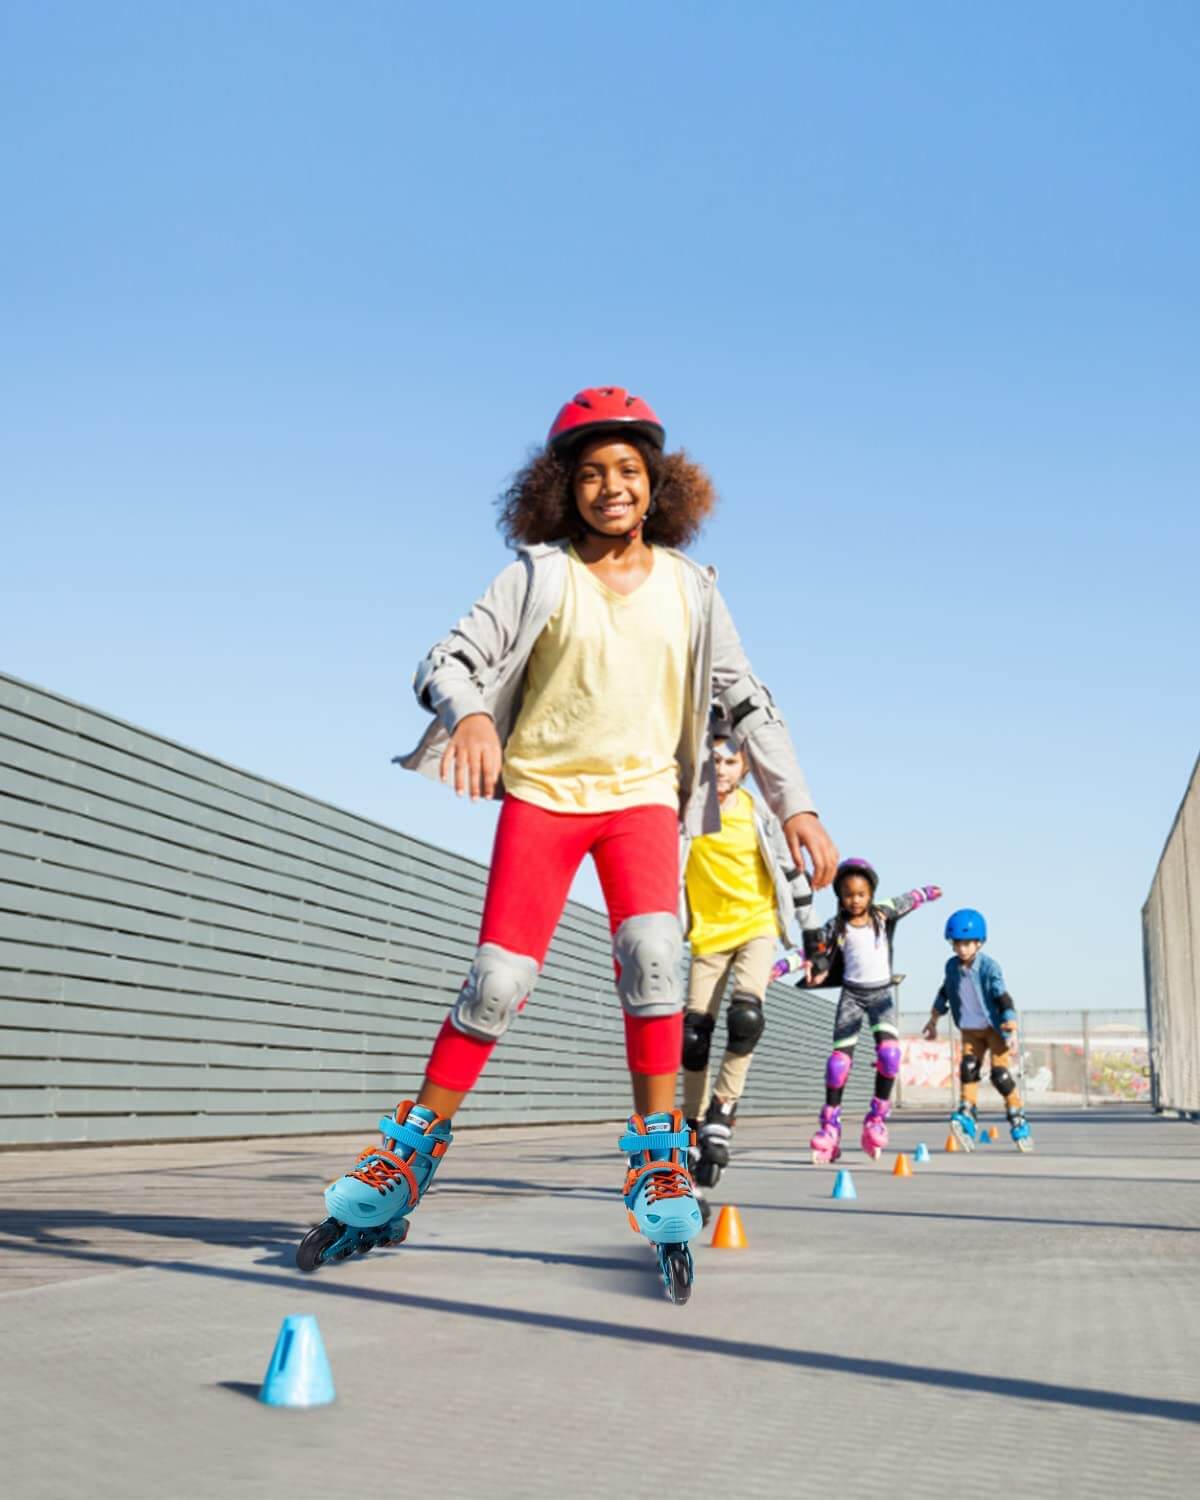 Gyroshoes Inline skate W2 Roller Blades for kids